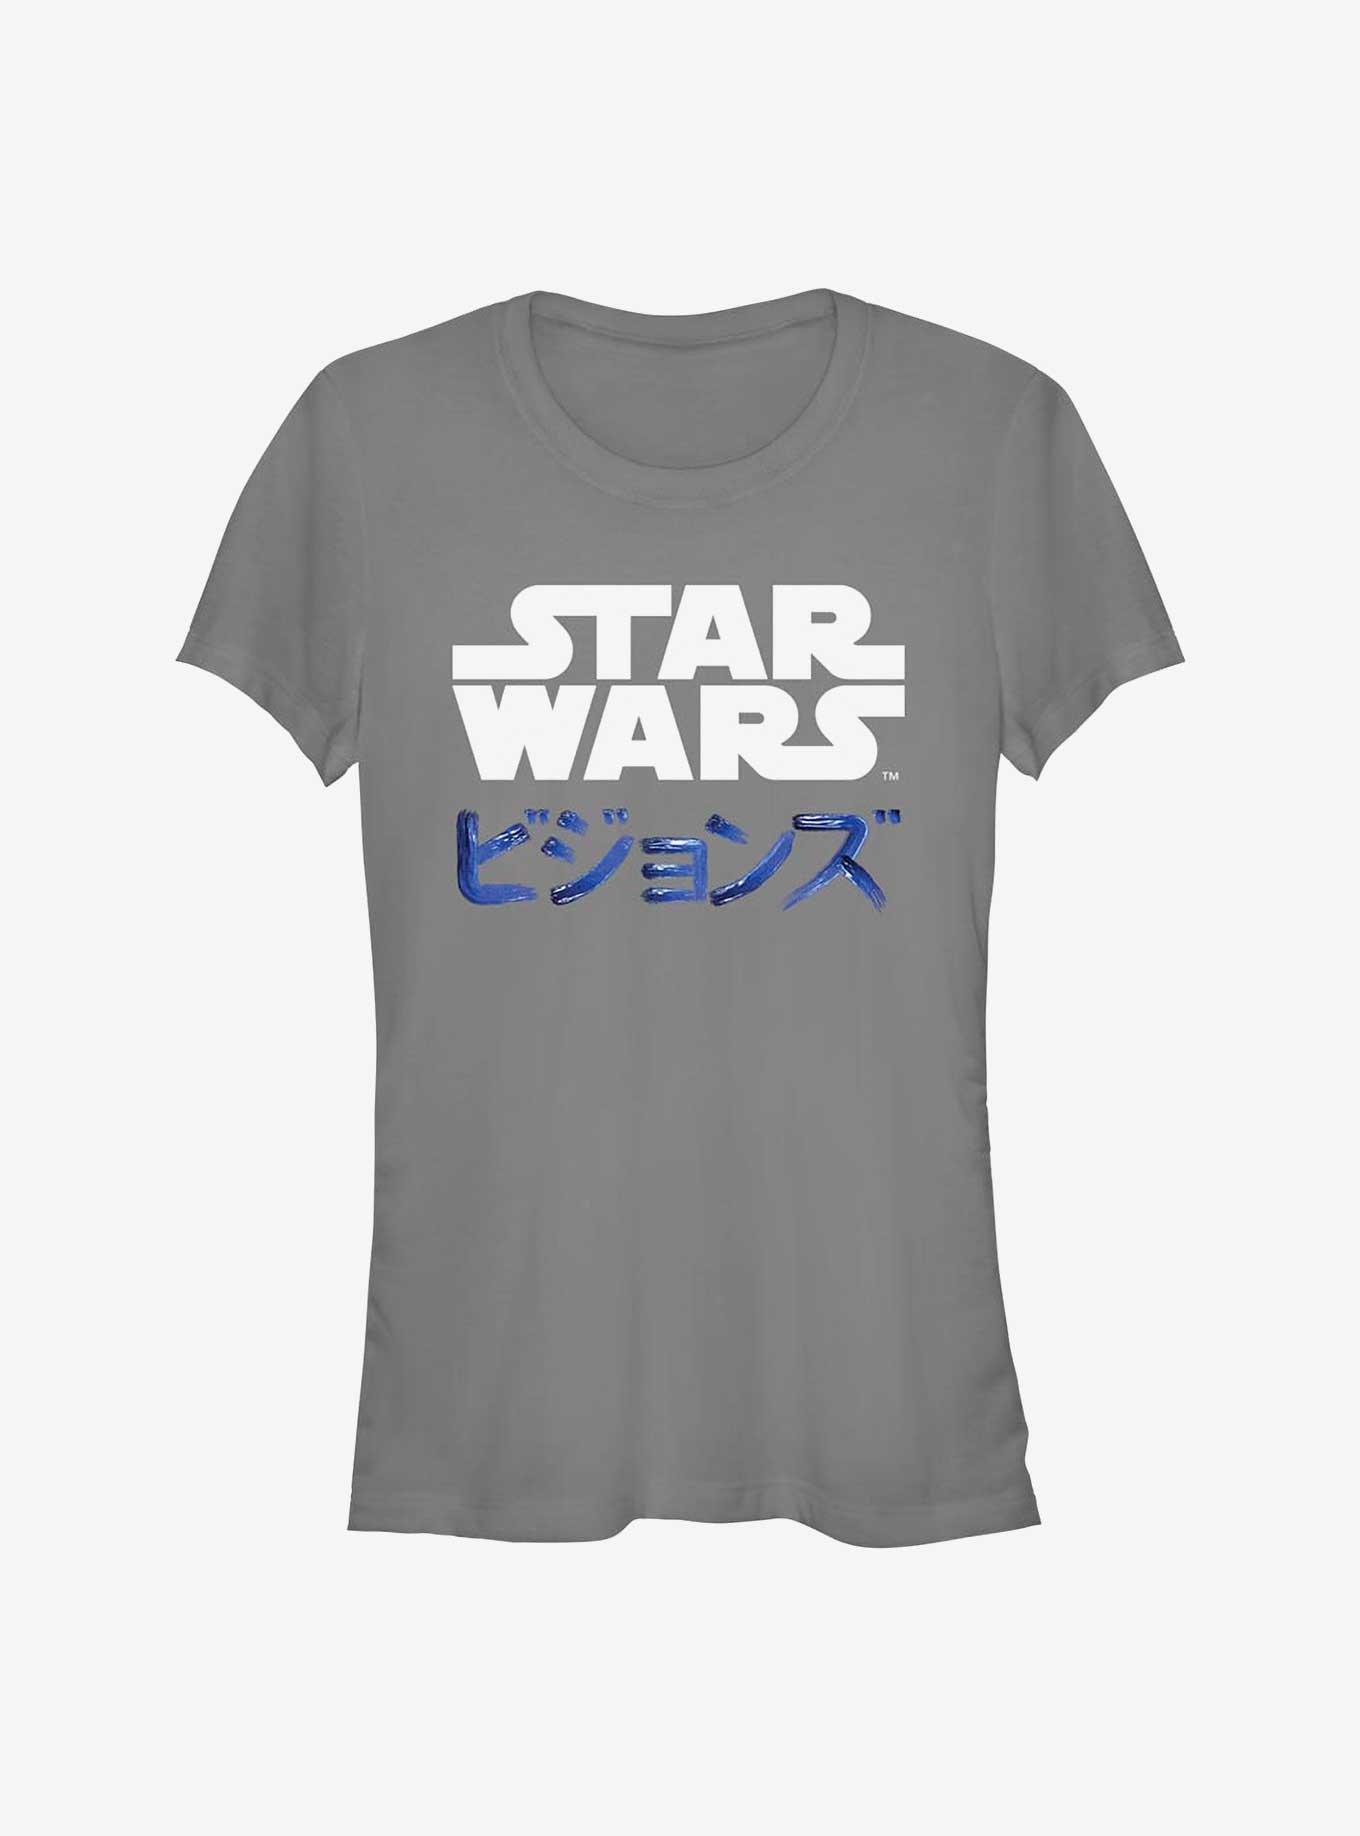 Star Wars: Visions Kanji Logo Girls T-Shirt, CHARCOAL, hi-res